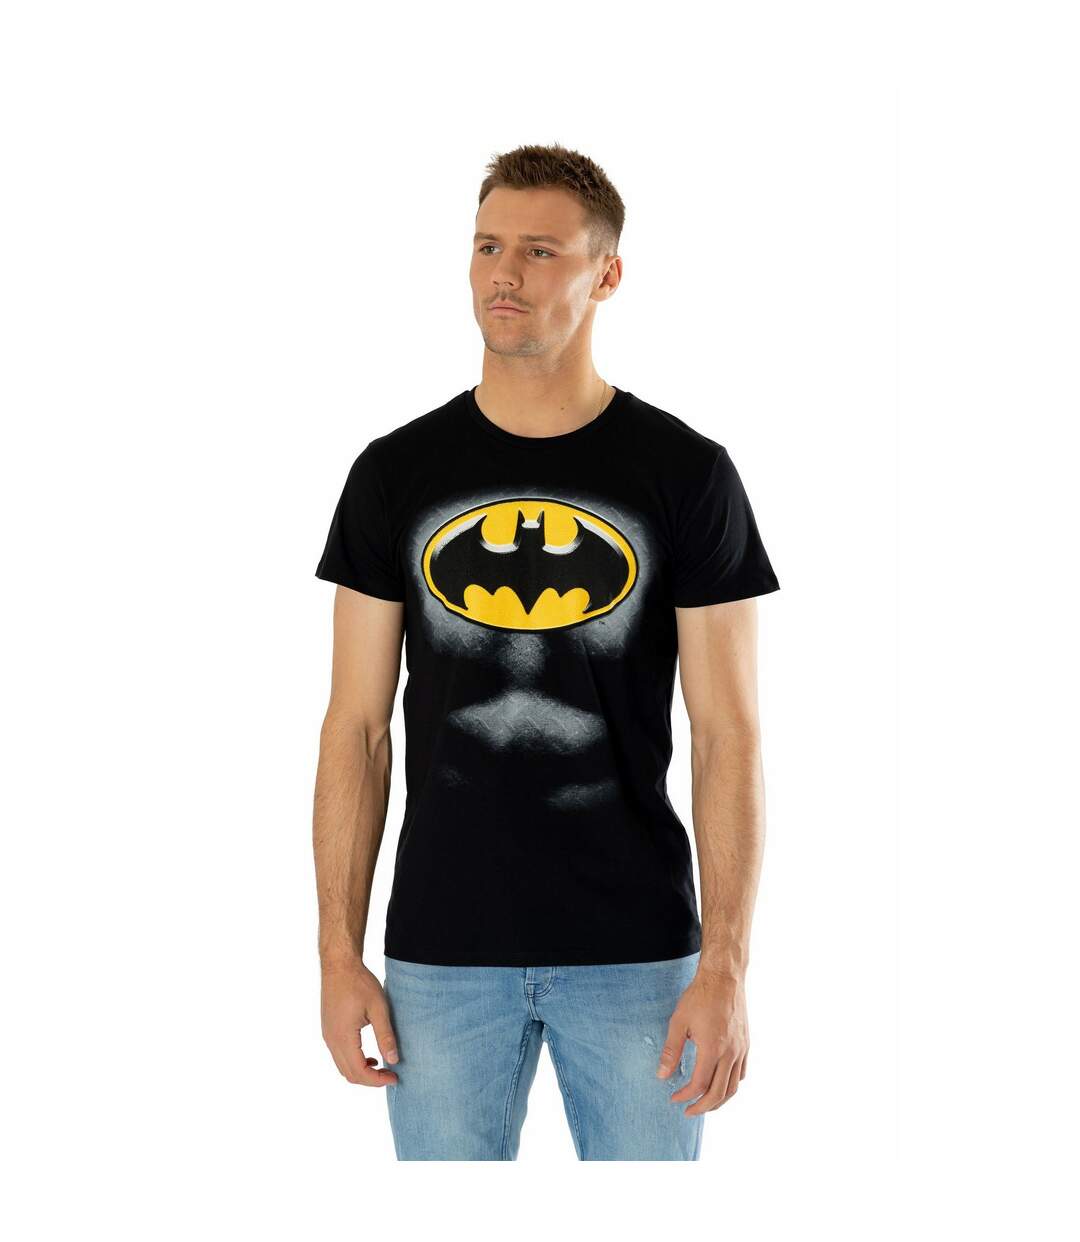 Batman - T-shirt - Adulte (Noir / Jaune) - UTBN4654